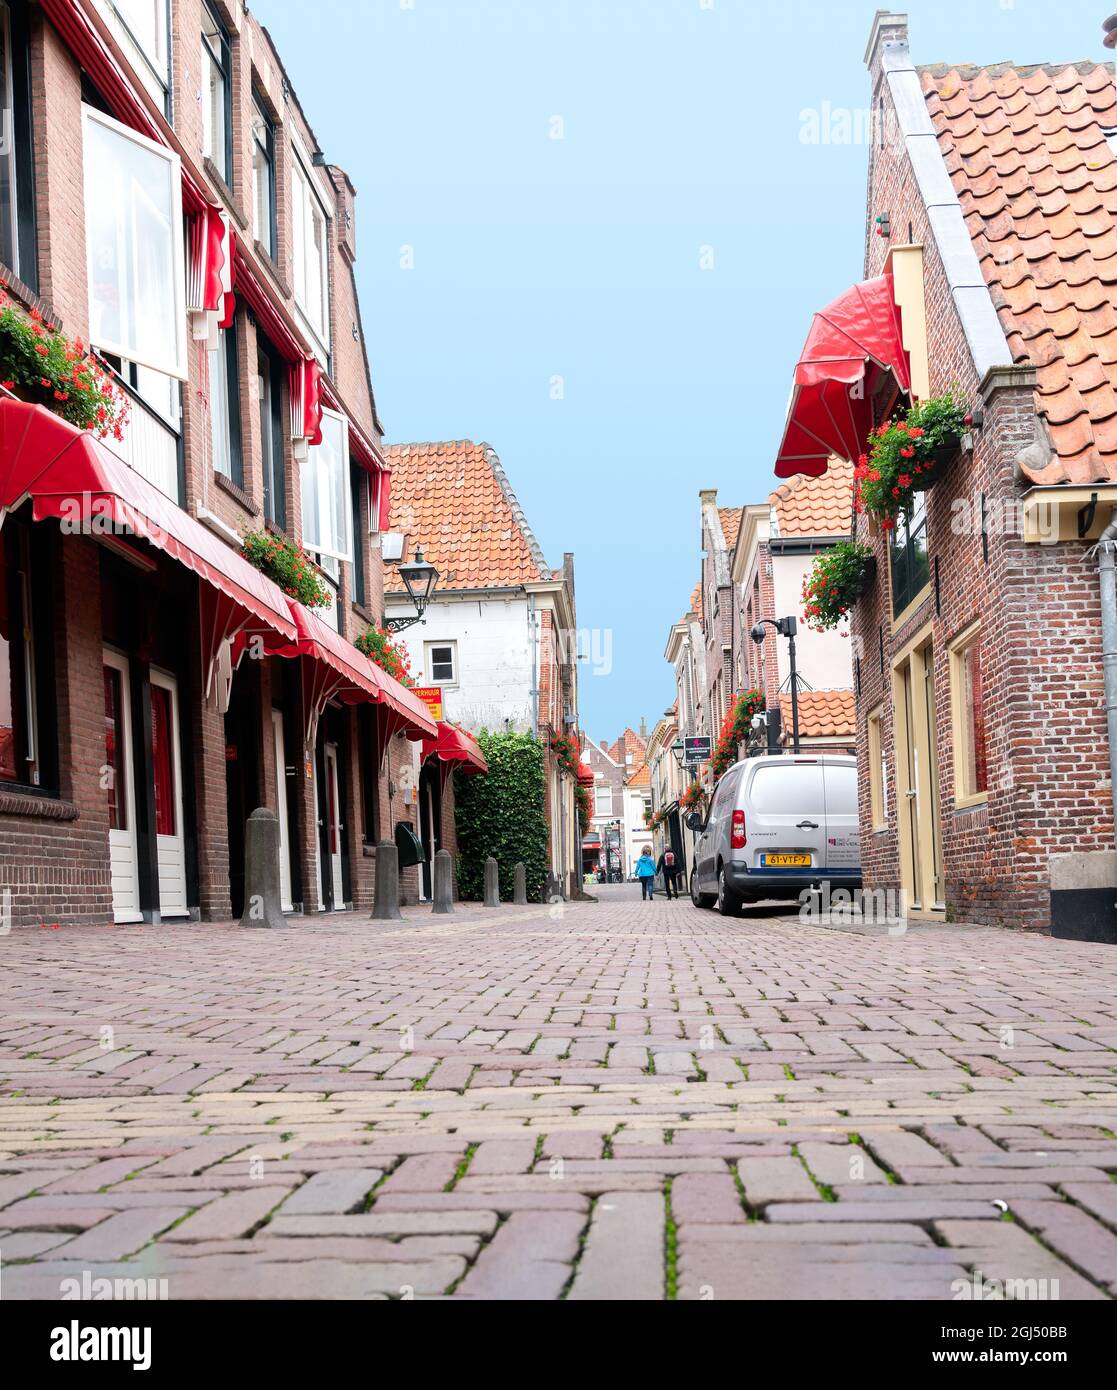 Alkmaar Paesi Bassi - Agosto 18 2012; strada tranquilla e pittoresca acciottolata con edifici in mattoni e piastrelle con tettoie rosse. Foto Stock